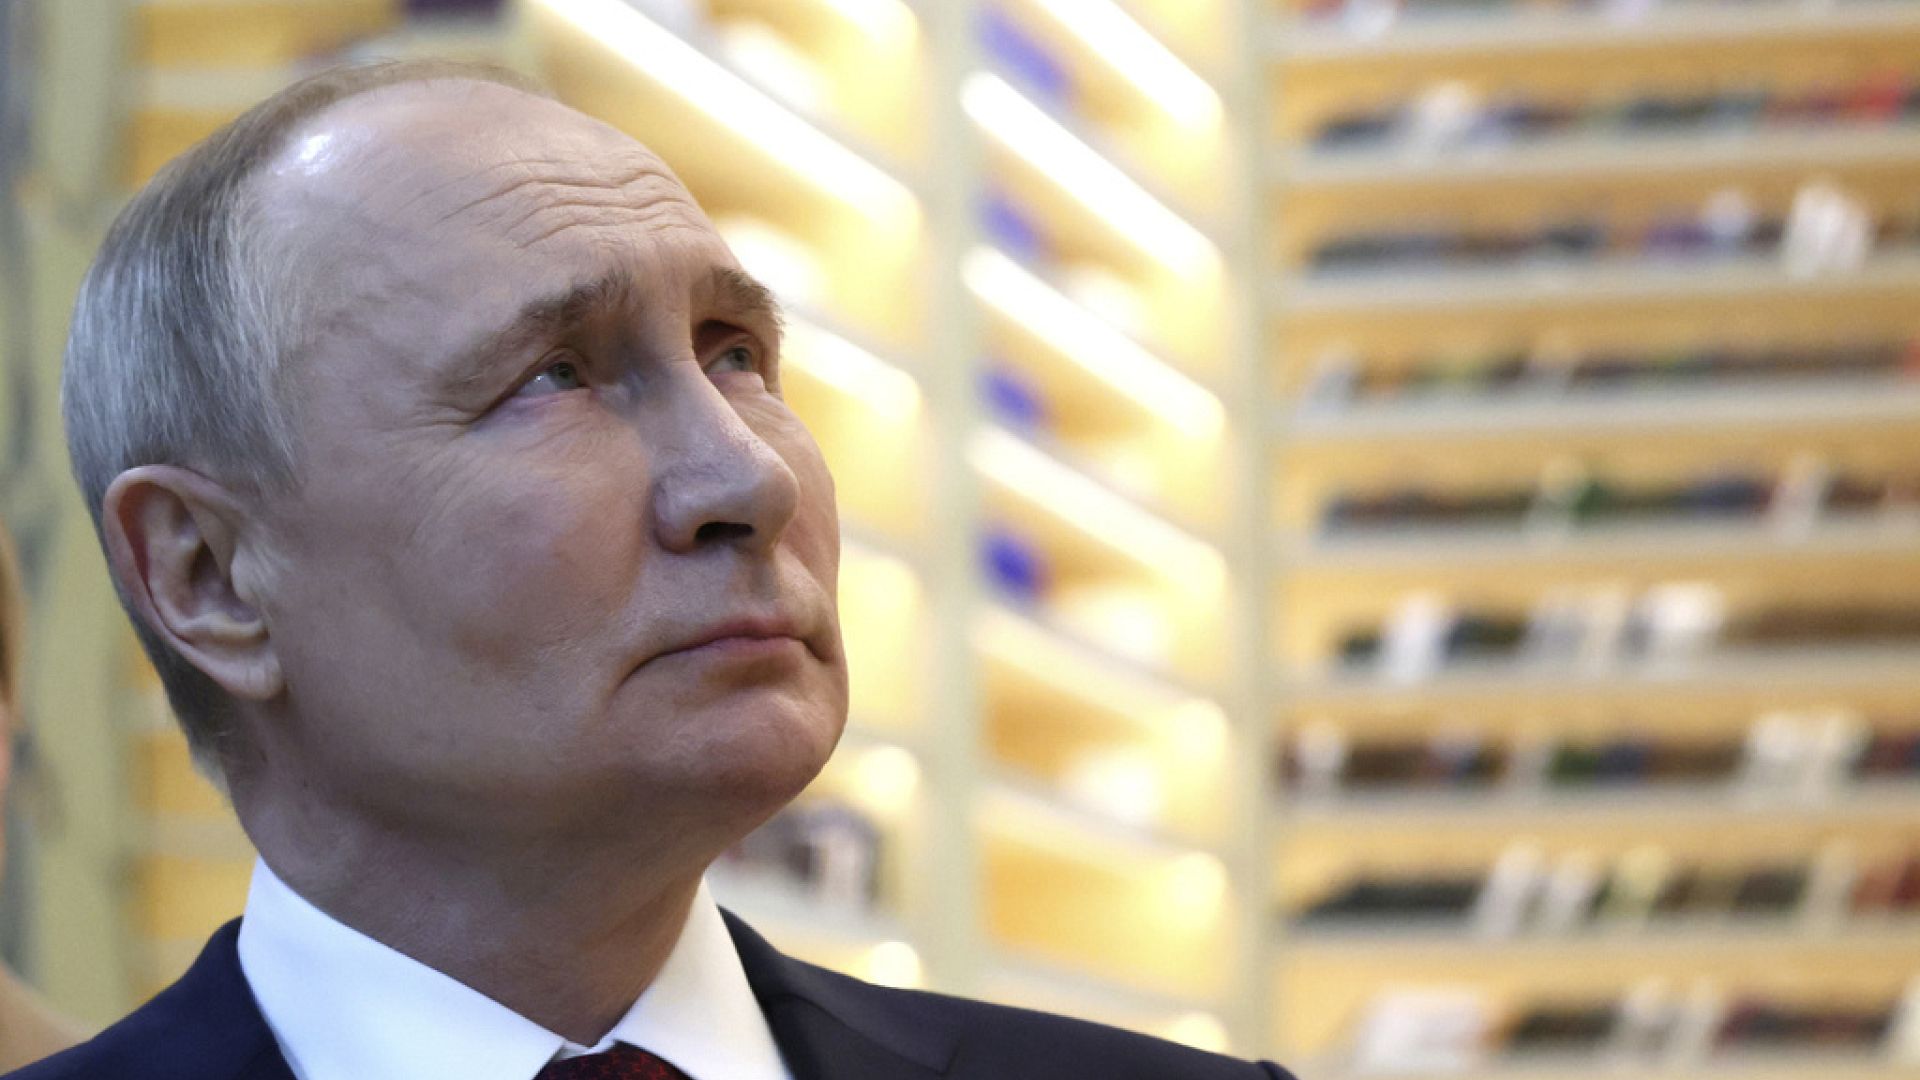 Rusya seçime gidiyor: 'Rakipsiz' Putin'in 6 yıl daha görevde kalması bekleniyor